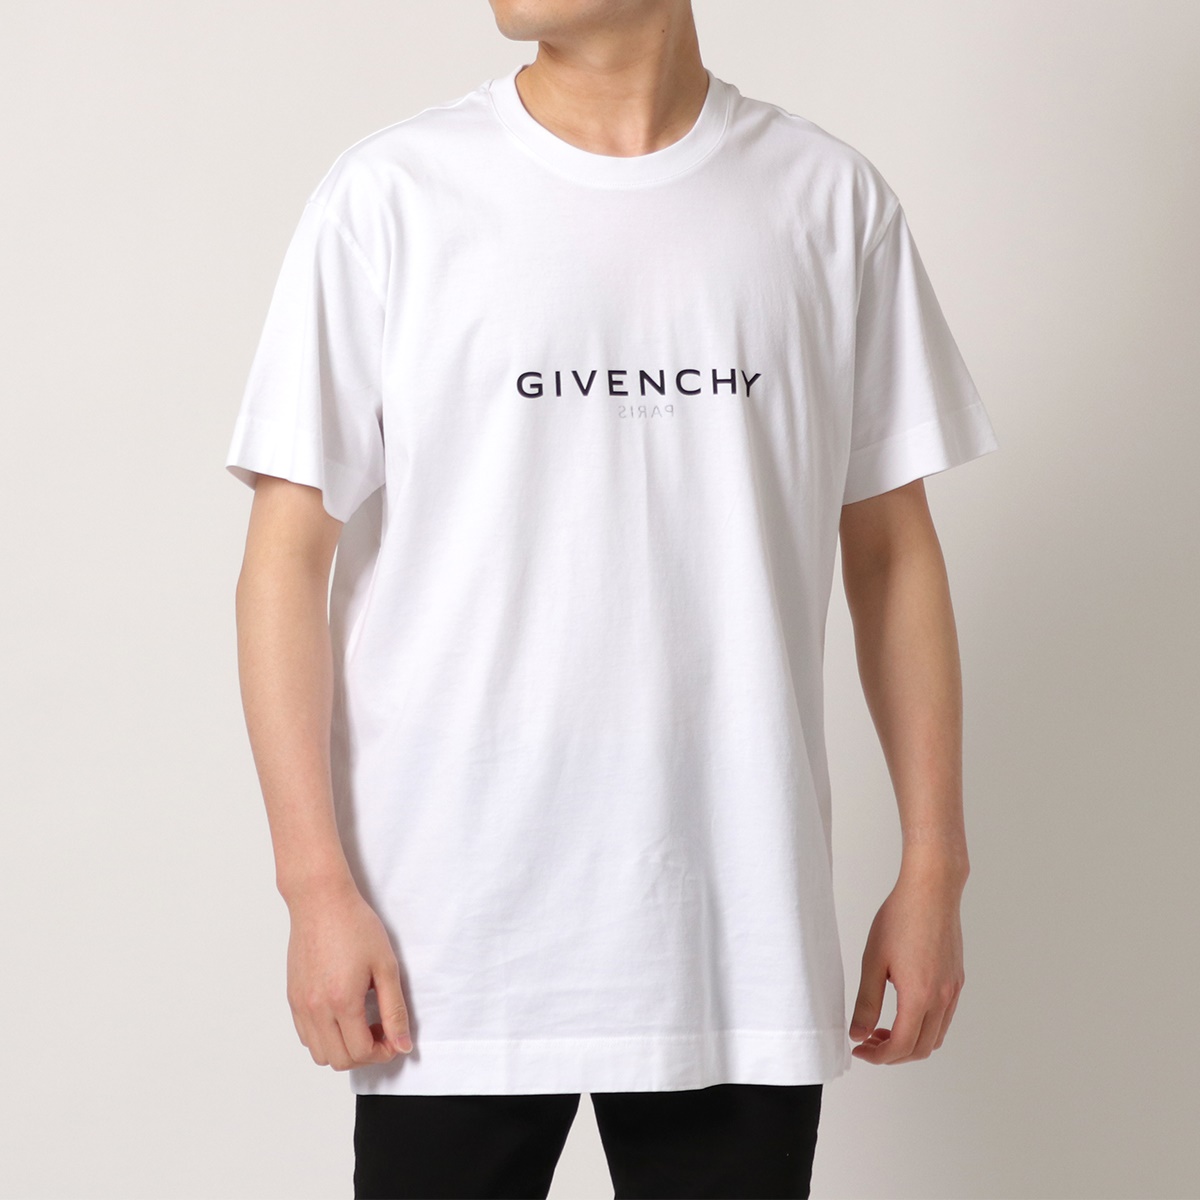 GIVENCHY ジバンシィ Tシャツ BM71533Y6B リバース オーバーサイズ 半袖 クルーネック カットソー ロゴ 100/WHITE |  インポートセレクト musee